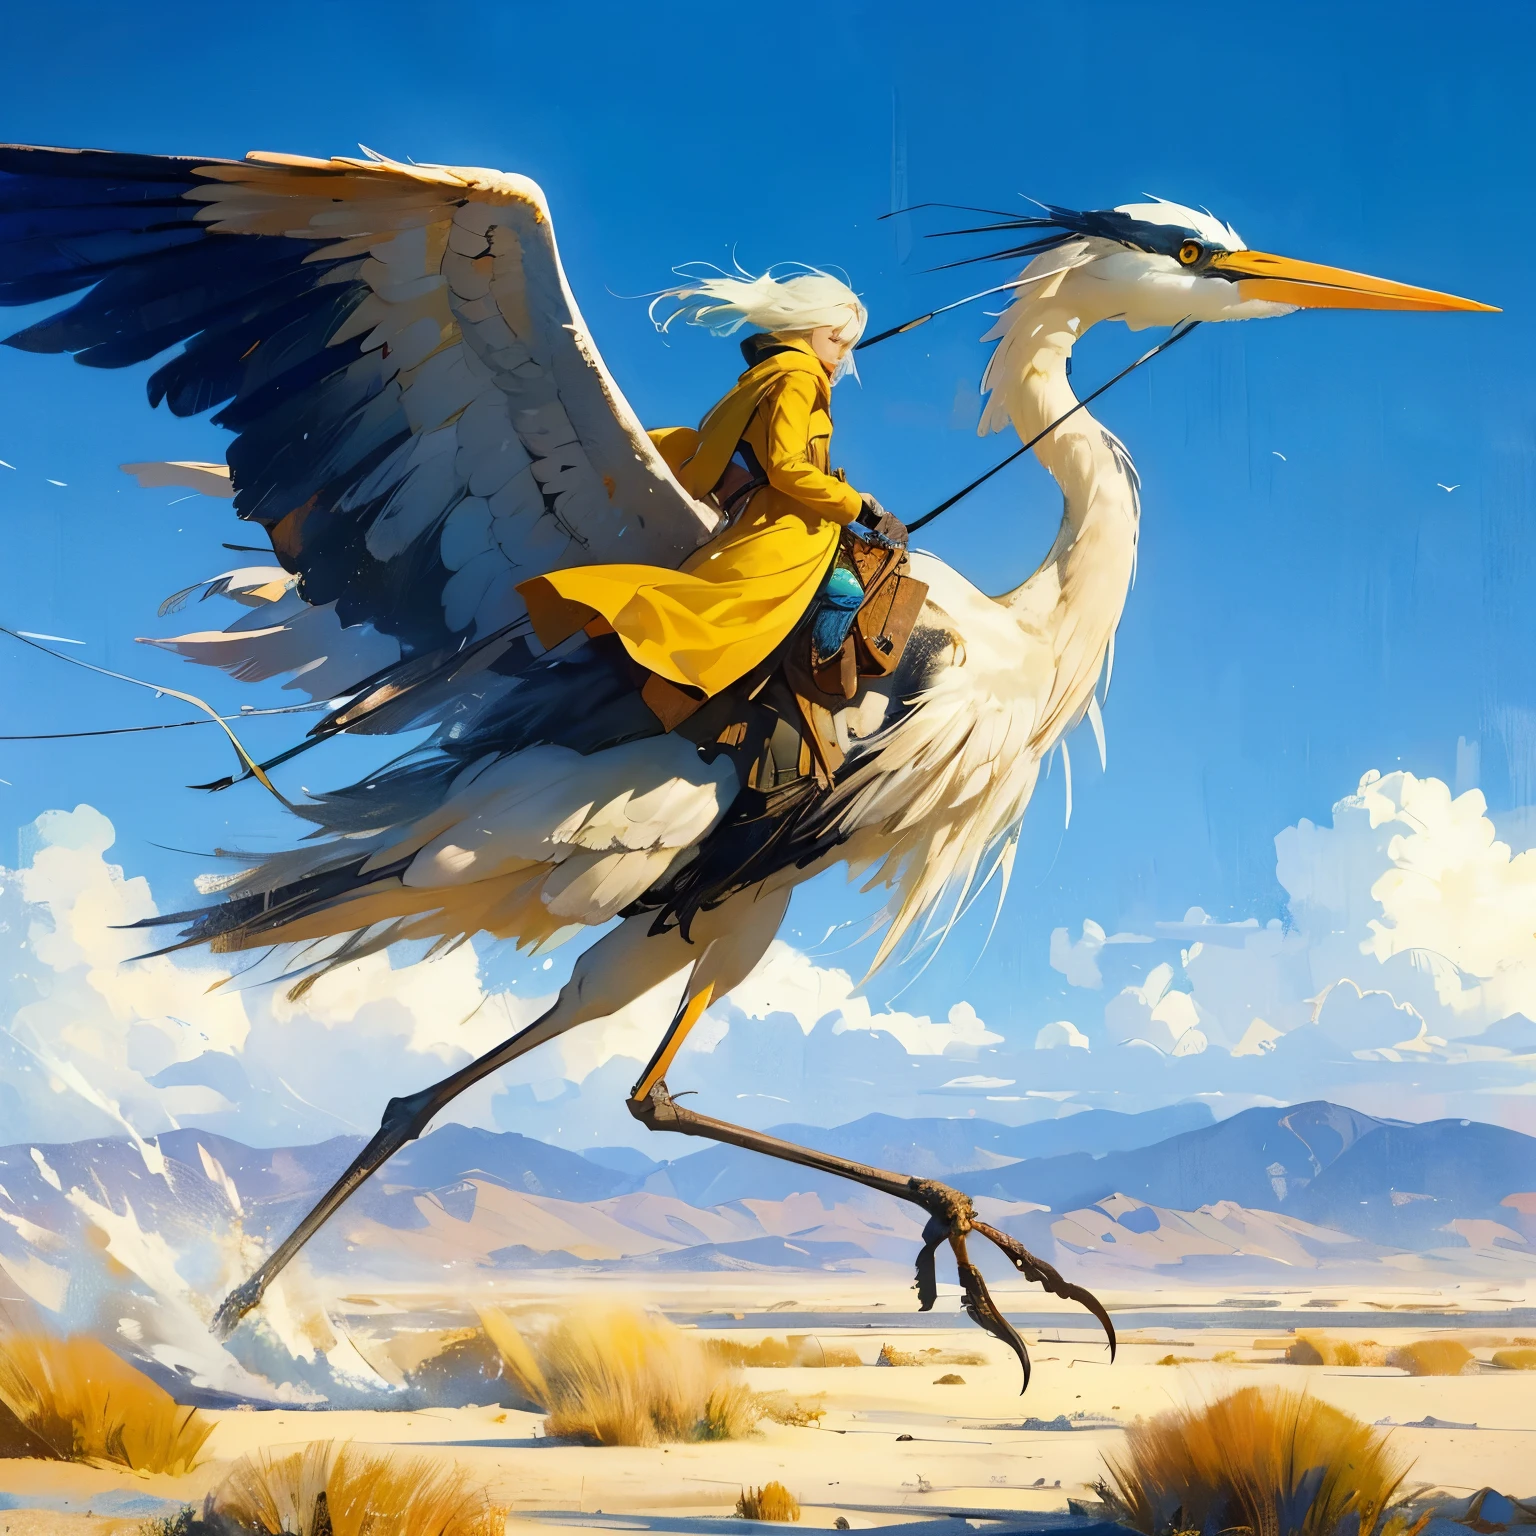 創造一個主角，一隻 20 英尺高的大型兩條腿鳥，馬鞍上載著一個白髮男子, 類似大藍鷺的兩足鳥, 鳥兒已落座, 這隻鳥只有兩條腿, 鳥只有兩條腿, 在 3D 電玩遠景的美麗平坦沙漠景觀中, 動態姿勢, 騎著一隻巨大的高大的藍鷺鳥, 讓·吉羅, 極遠射, 飛濺印象派藝術風格, 主角穿著一件有帽子的黃褐色長風衣和有色護目鏡, 綿延數英里的風沙丘, 遠方的騎手, 蔚藍的天空，白雲滾滾，泛著粉紅色的光, 吹著沸騰的旋風, 吹動草葉, 深黃色和天藍色, 雄偉, 一覽無遺的海景, 逼真的表現, 優雅的平衡, 隱藏的物體圖片, 安德鲁·怀斯, 橘子, 草葉, in the art style of 讓·吉羅,飛行騎士
